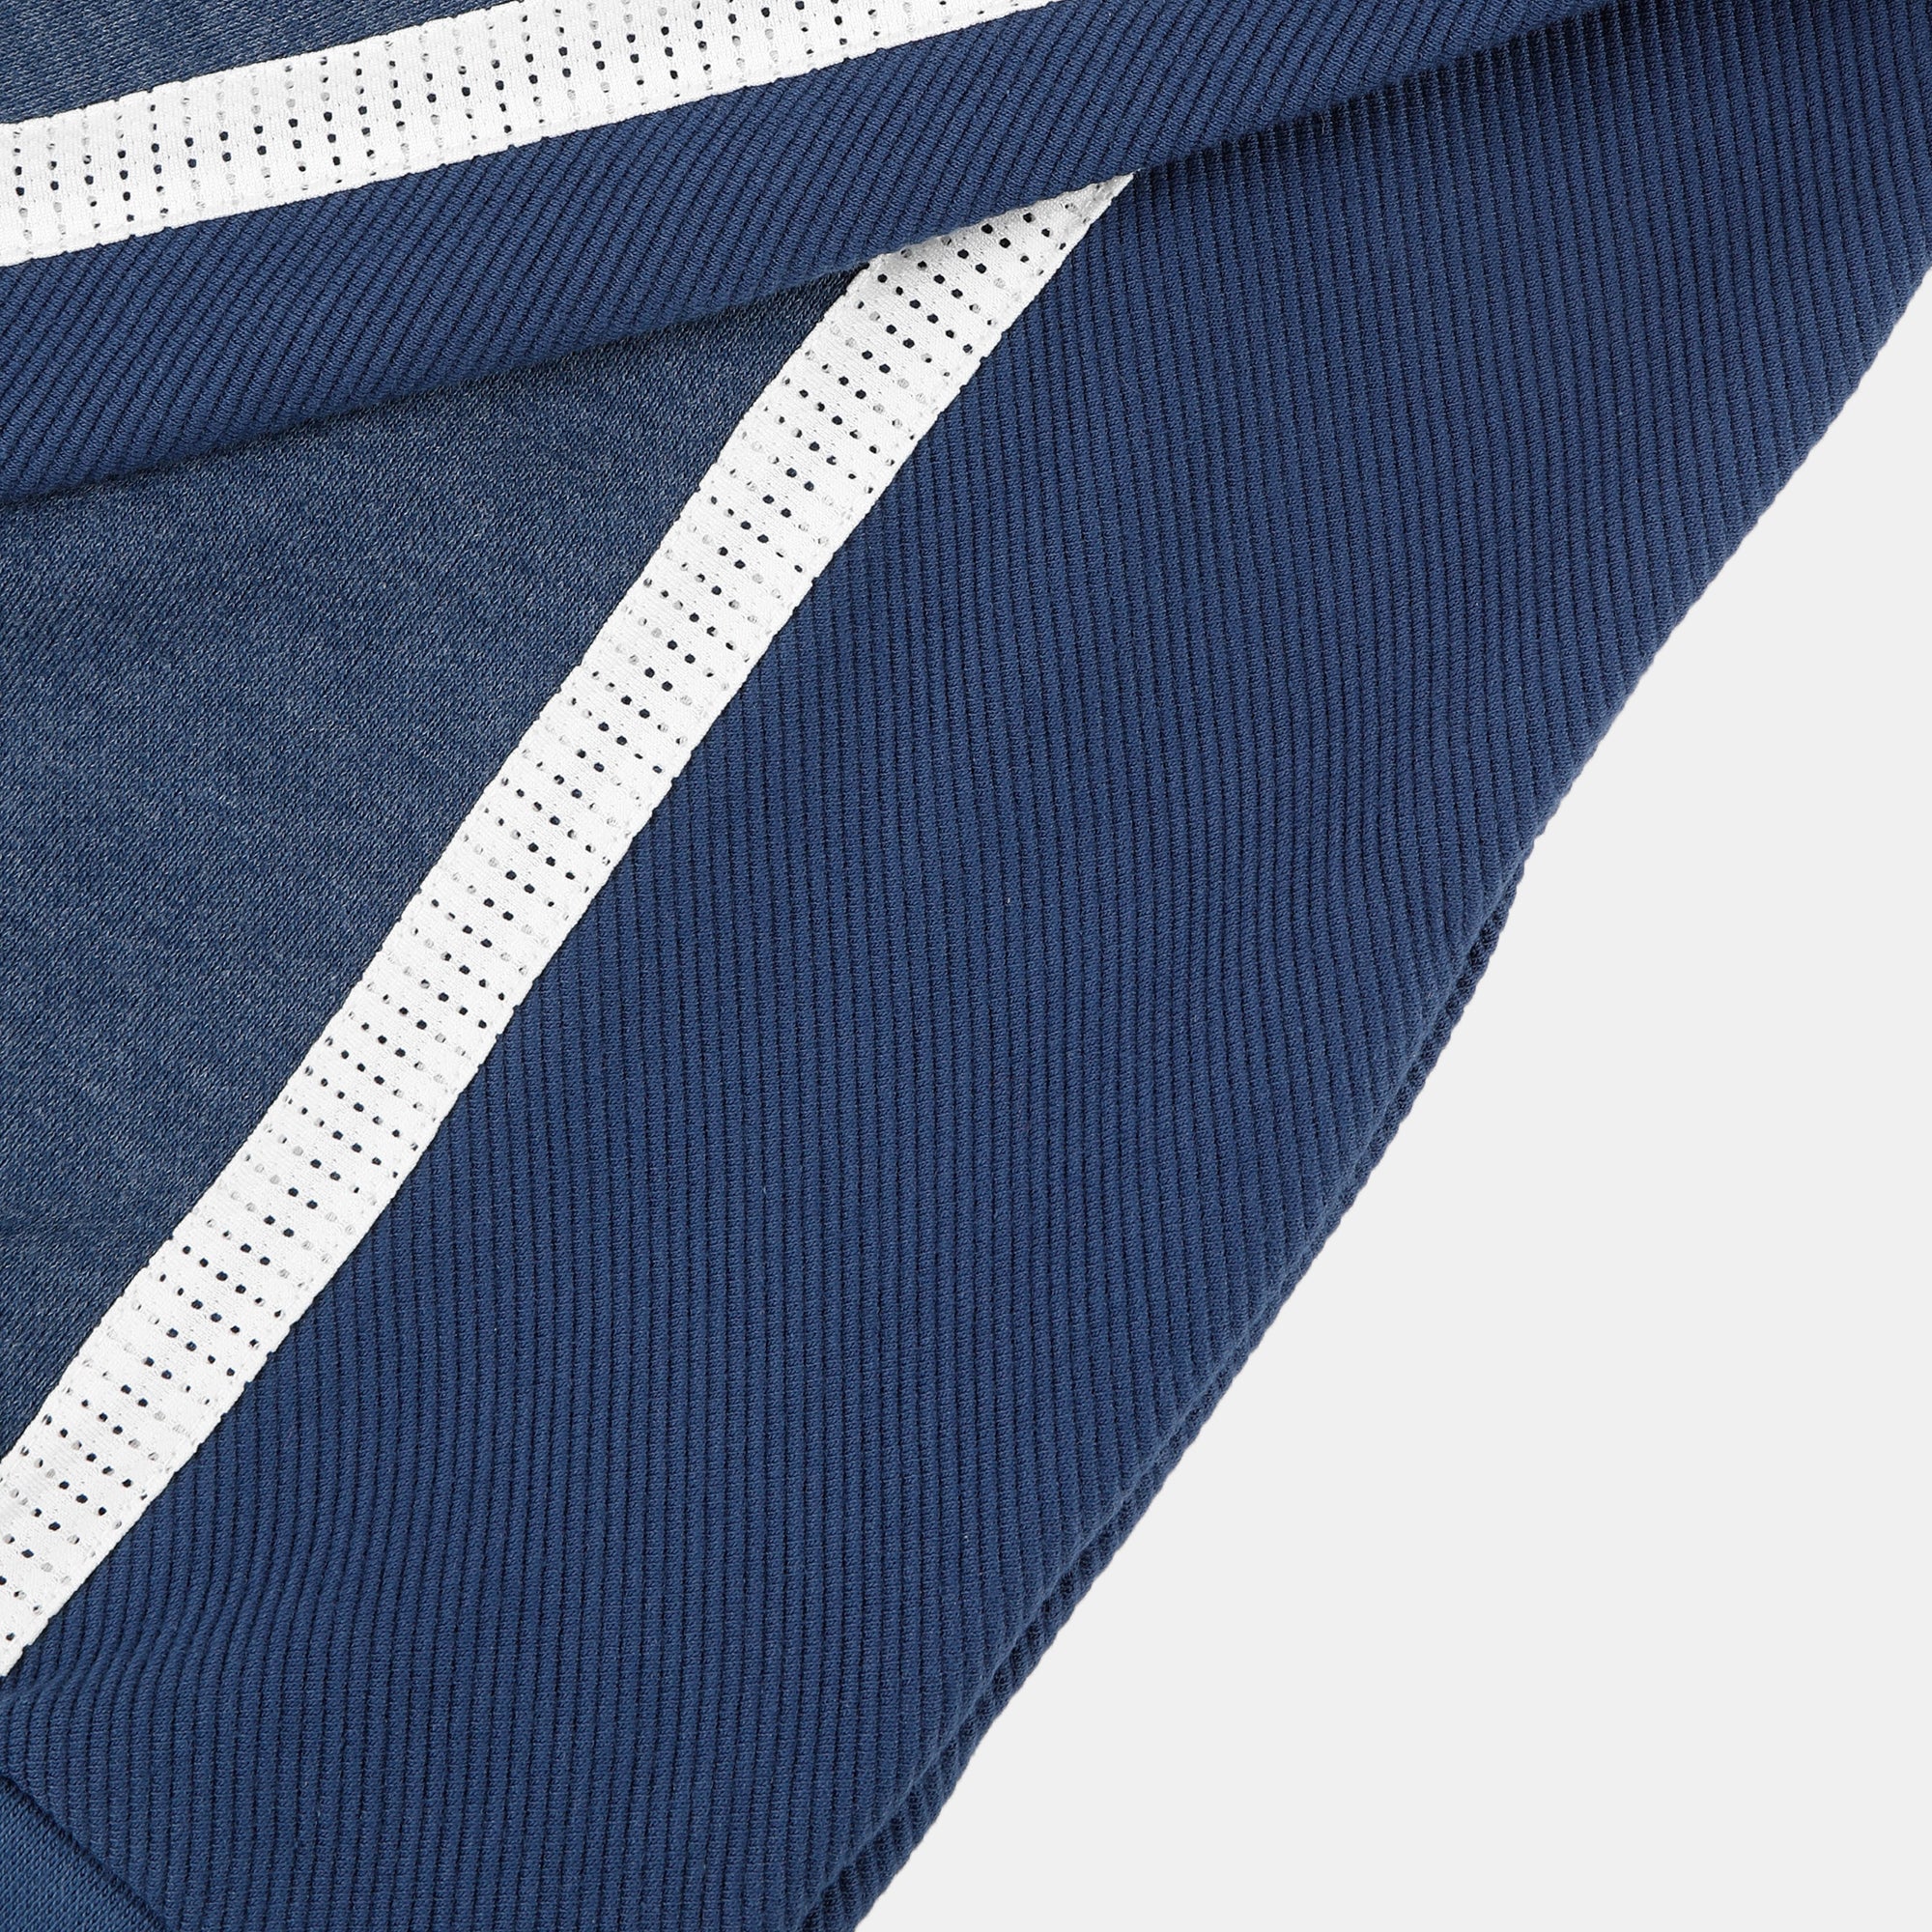 2410049-EFRO 24 Crew Sweat N°1 M insignia blue  | Sweatshirtshirt Mit Rundhalsausschnitt Unisex